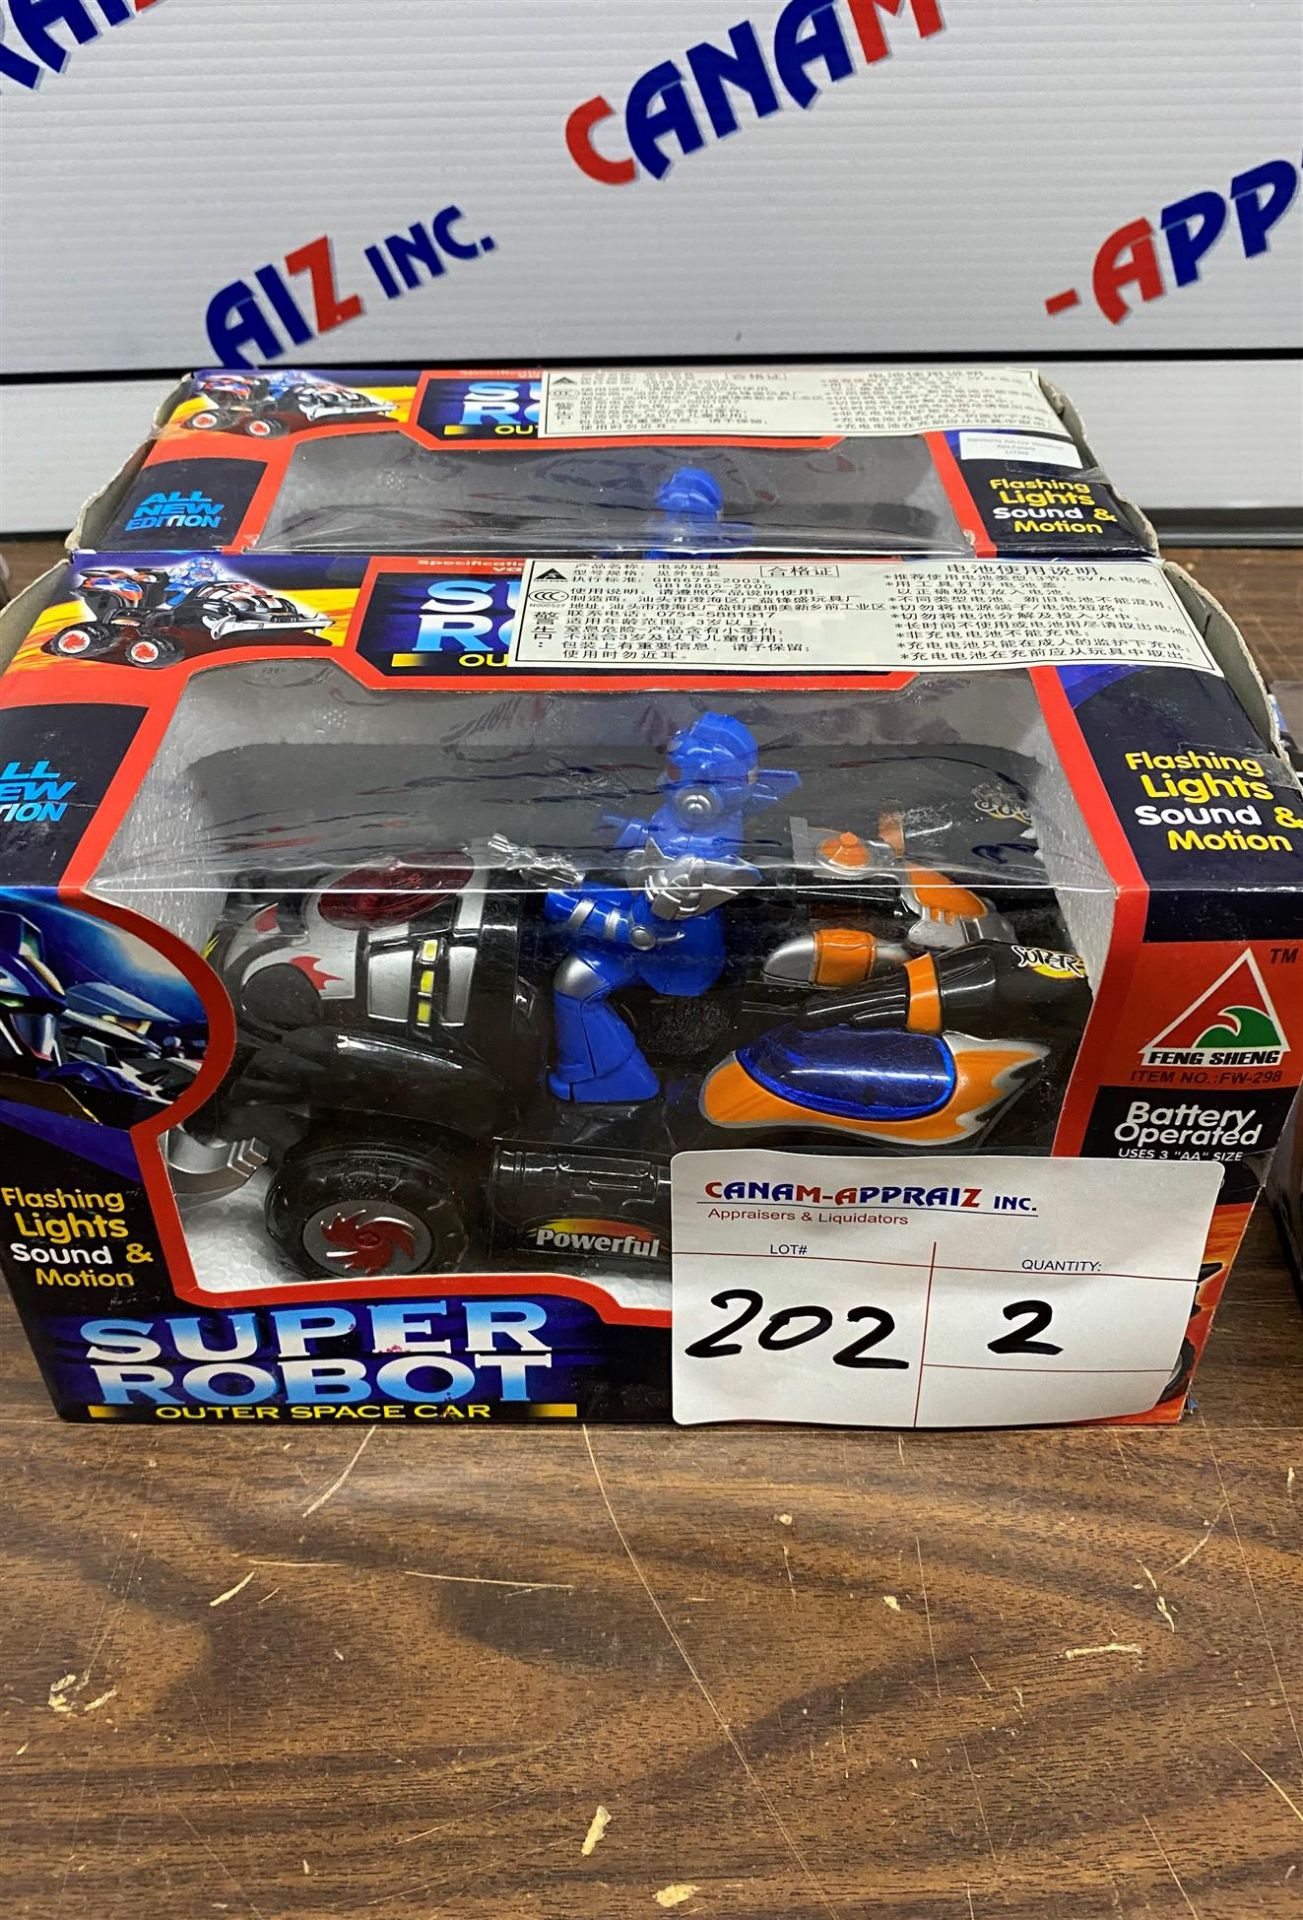 Super Robot Outer Space Car - Toy Car & Figure - 2PCS